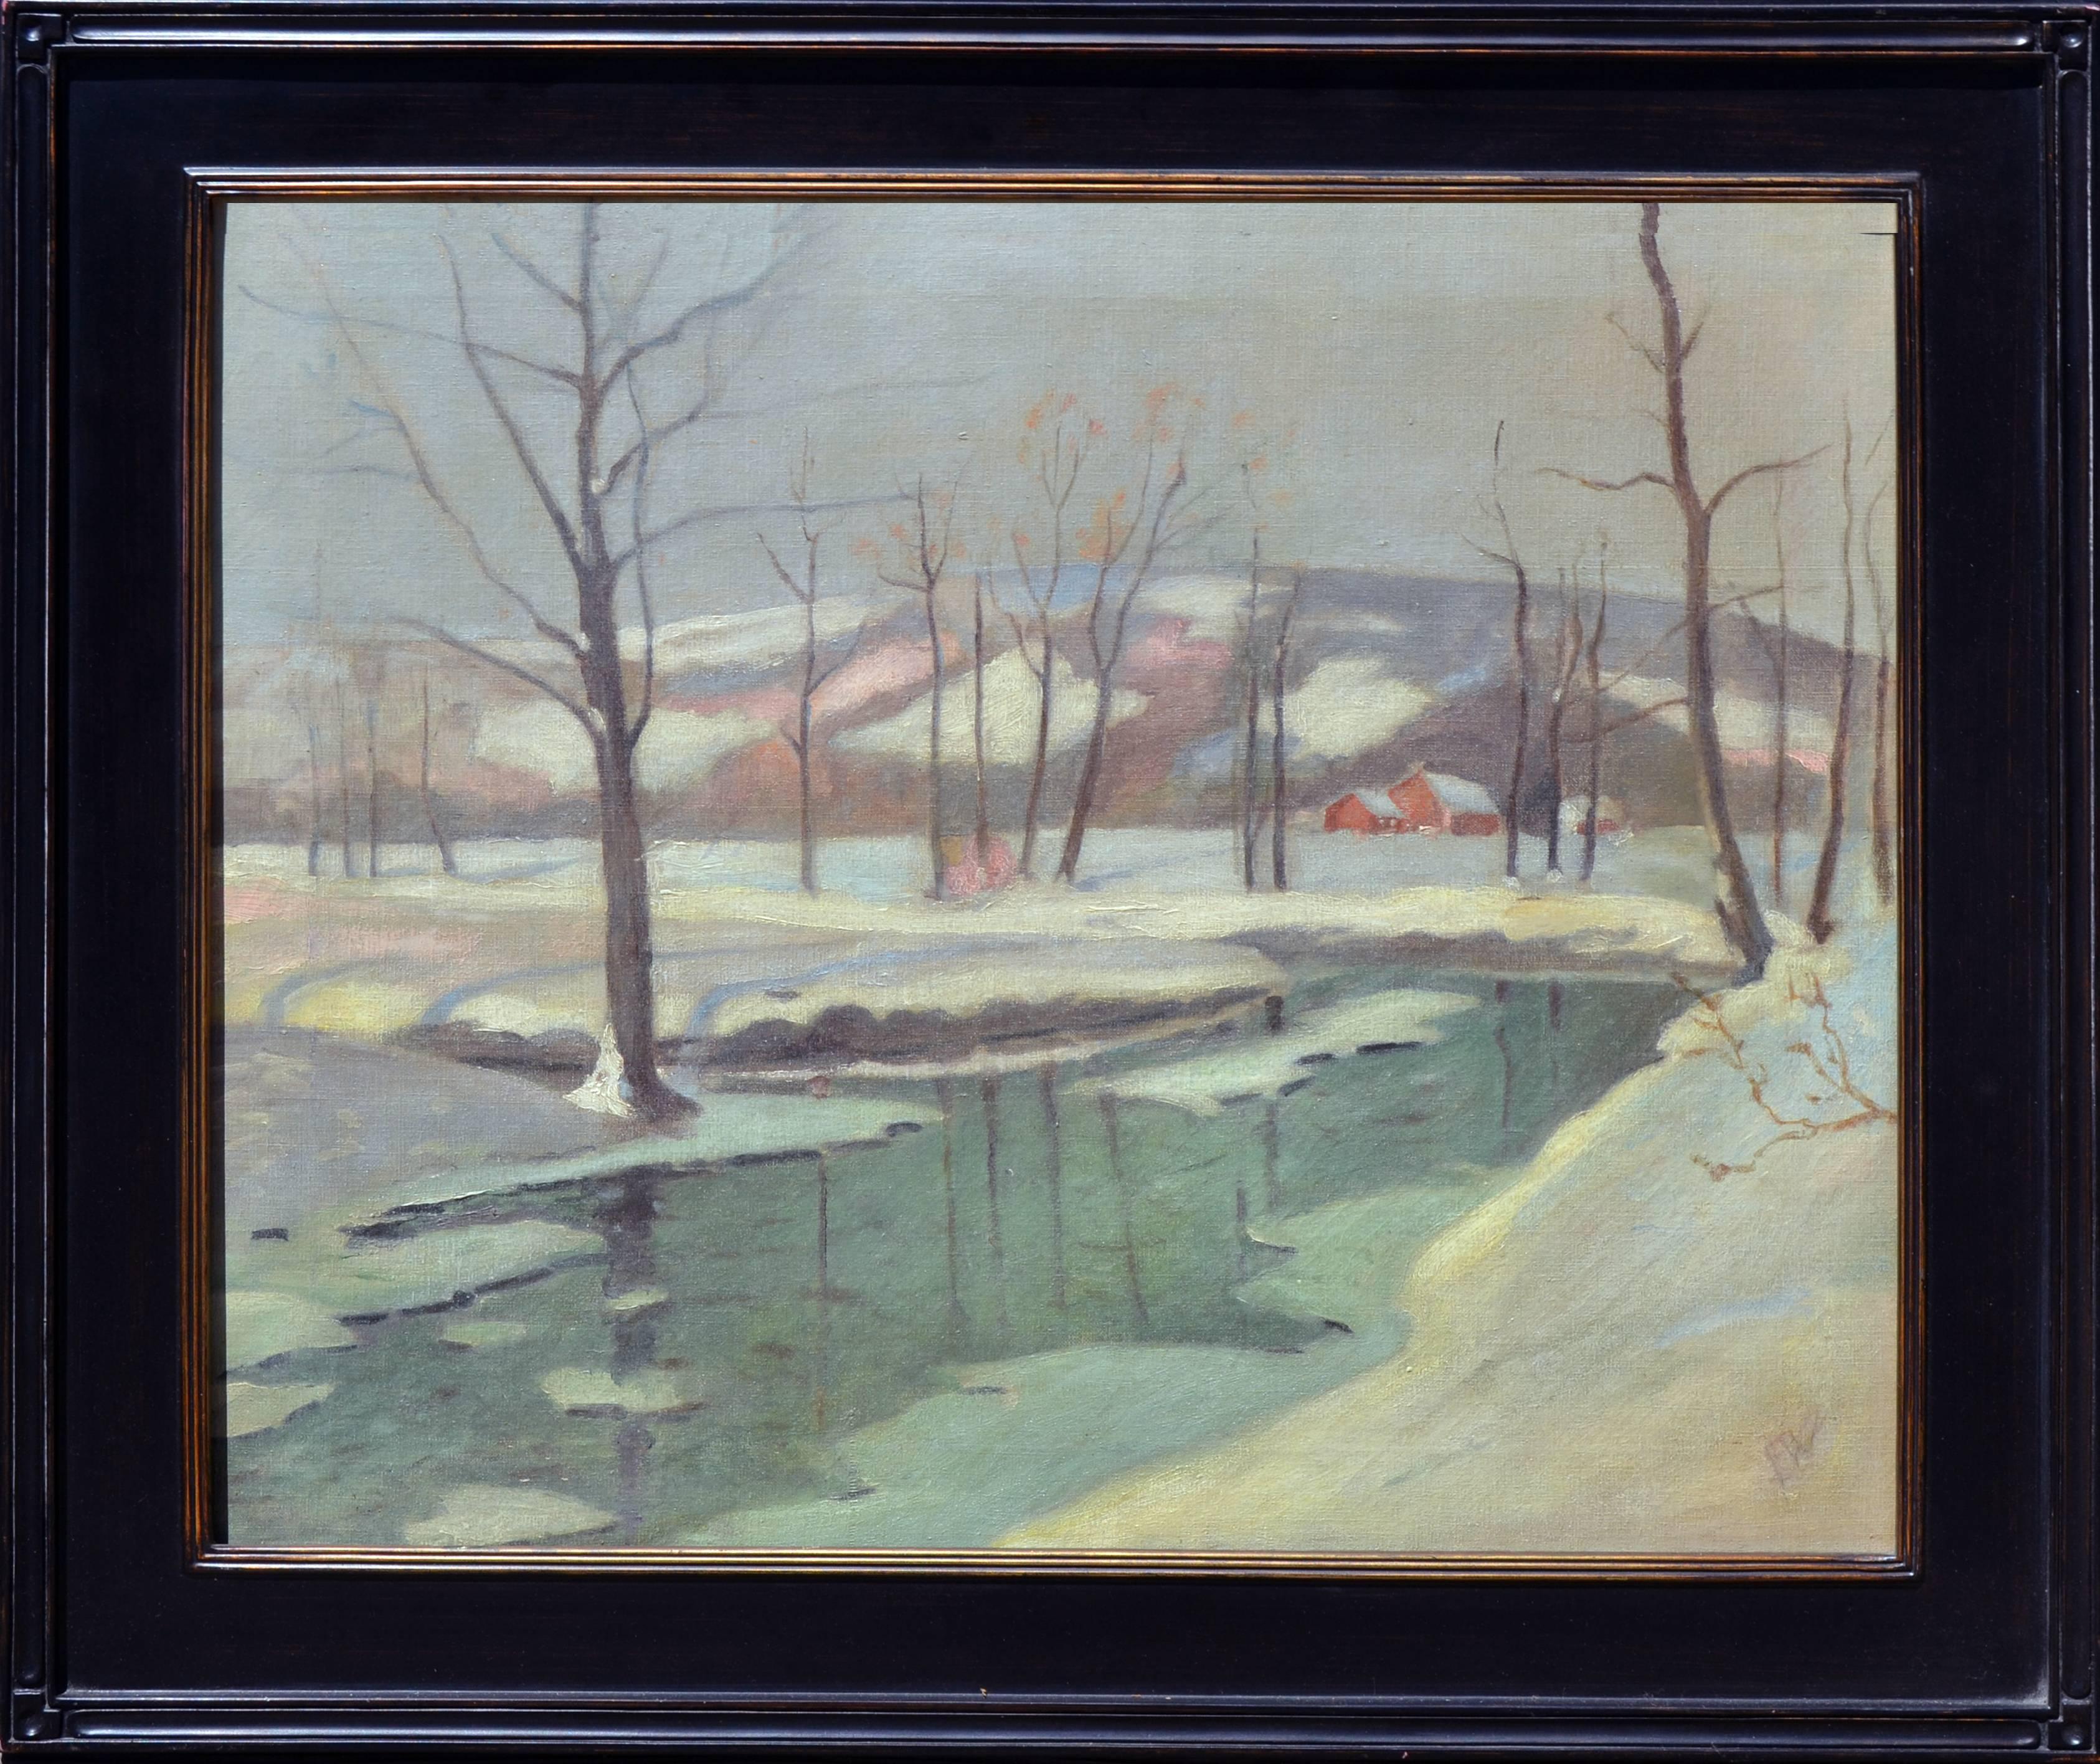 Landscape Painting Frederick R. Wagner - Scène d'hiver - Paysage de neige des années 1930